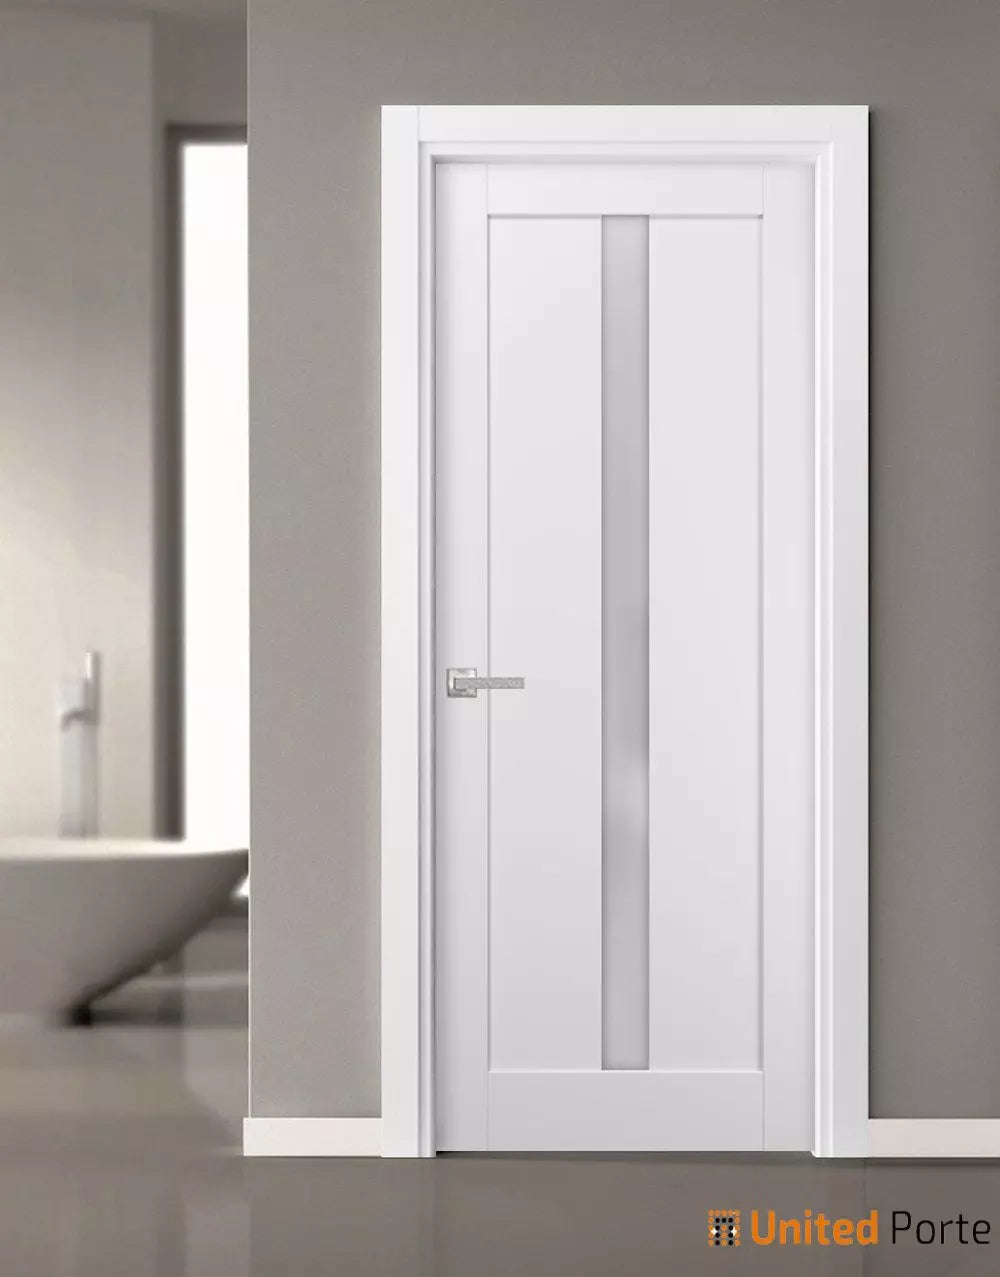 French Panel Lite Door with Hardware | Bathroom Bedroom Interior Sturdy Doors | Buy Doors Online